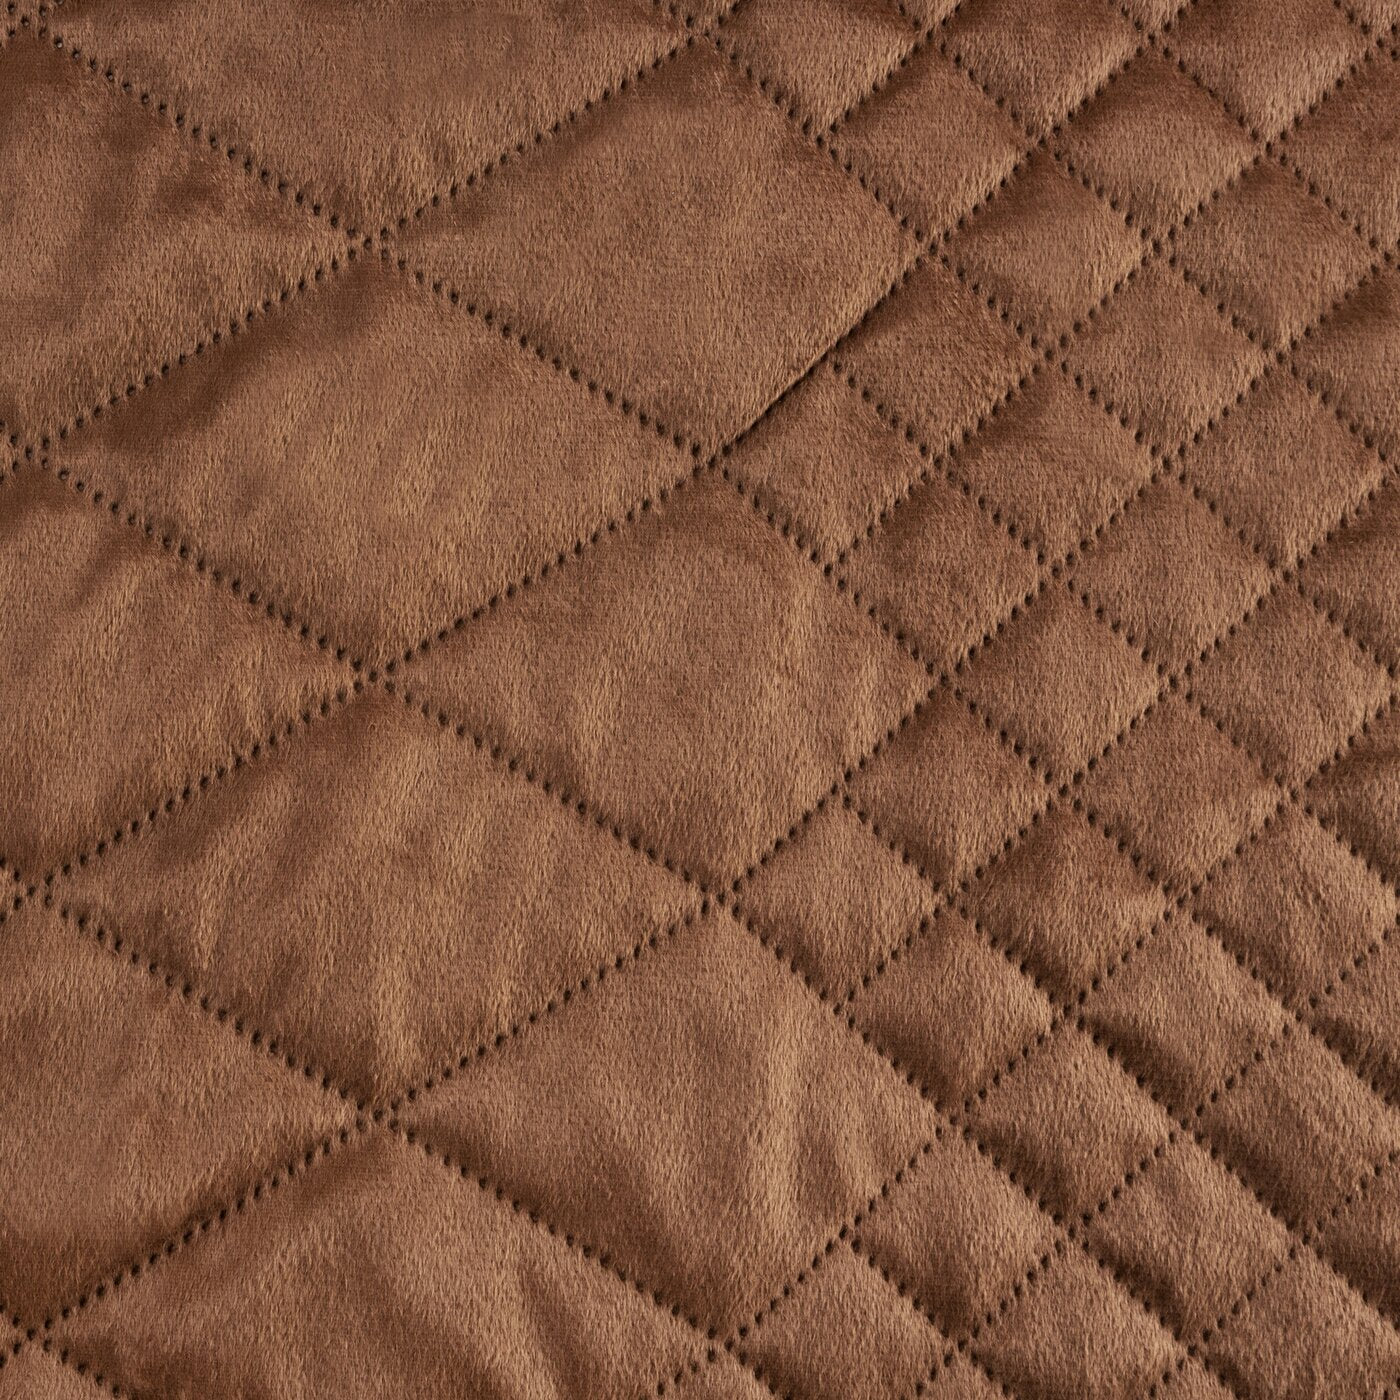 Cuvertură de pat din catifea, matlasată prin presare la cald în model geometric roșu cărămidă LUIZ 3 Perdele de Poveste